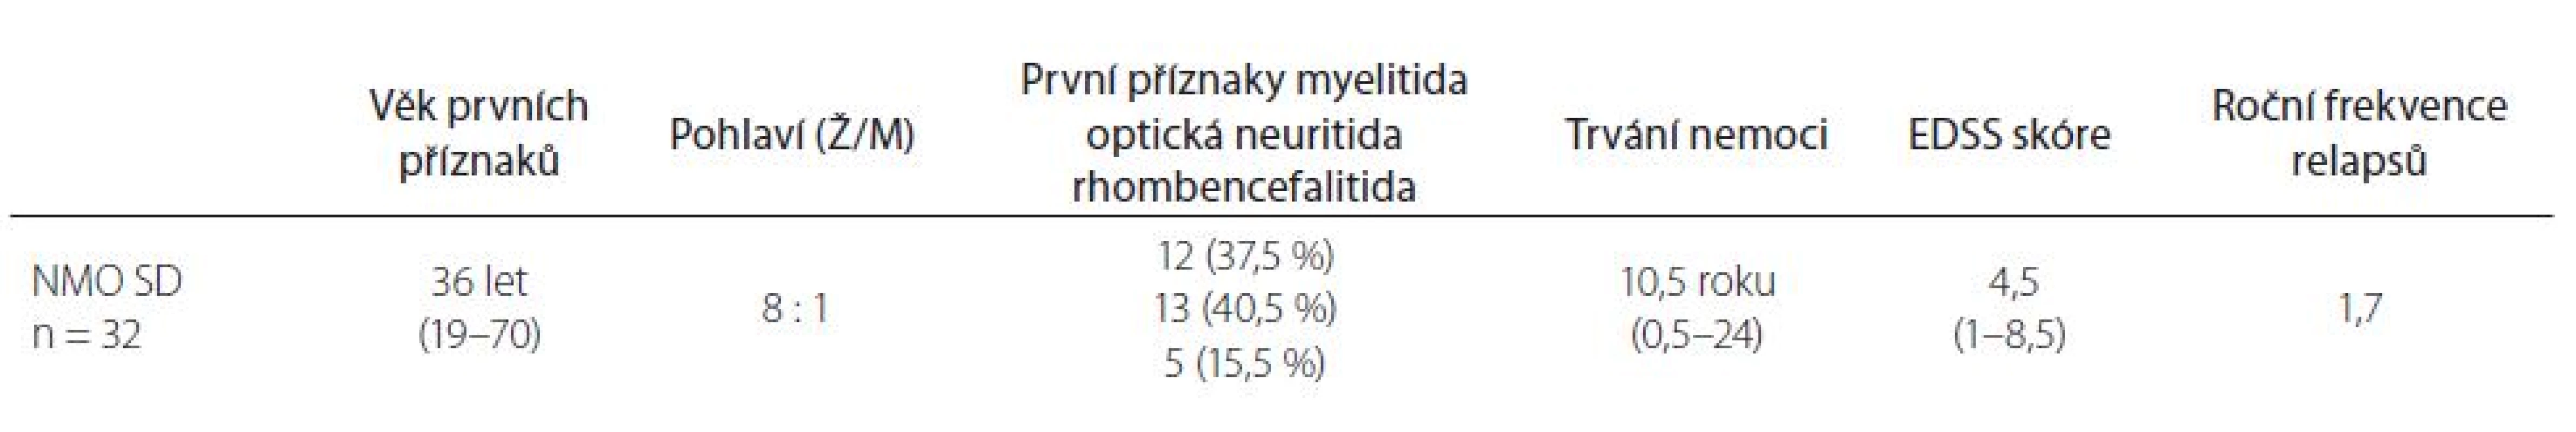 Základní demografické údaje u pacientů s neuromyelitis optica a poruch jejího širšího spektra. 
V tabulce jsou uvedeny hodnoty mediánu, v závorce rozmezí, popř. procenta.